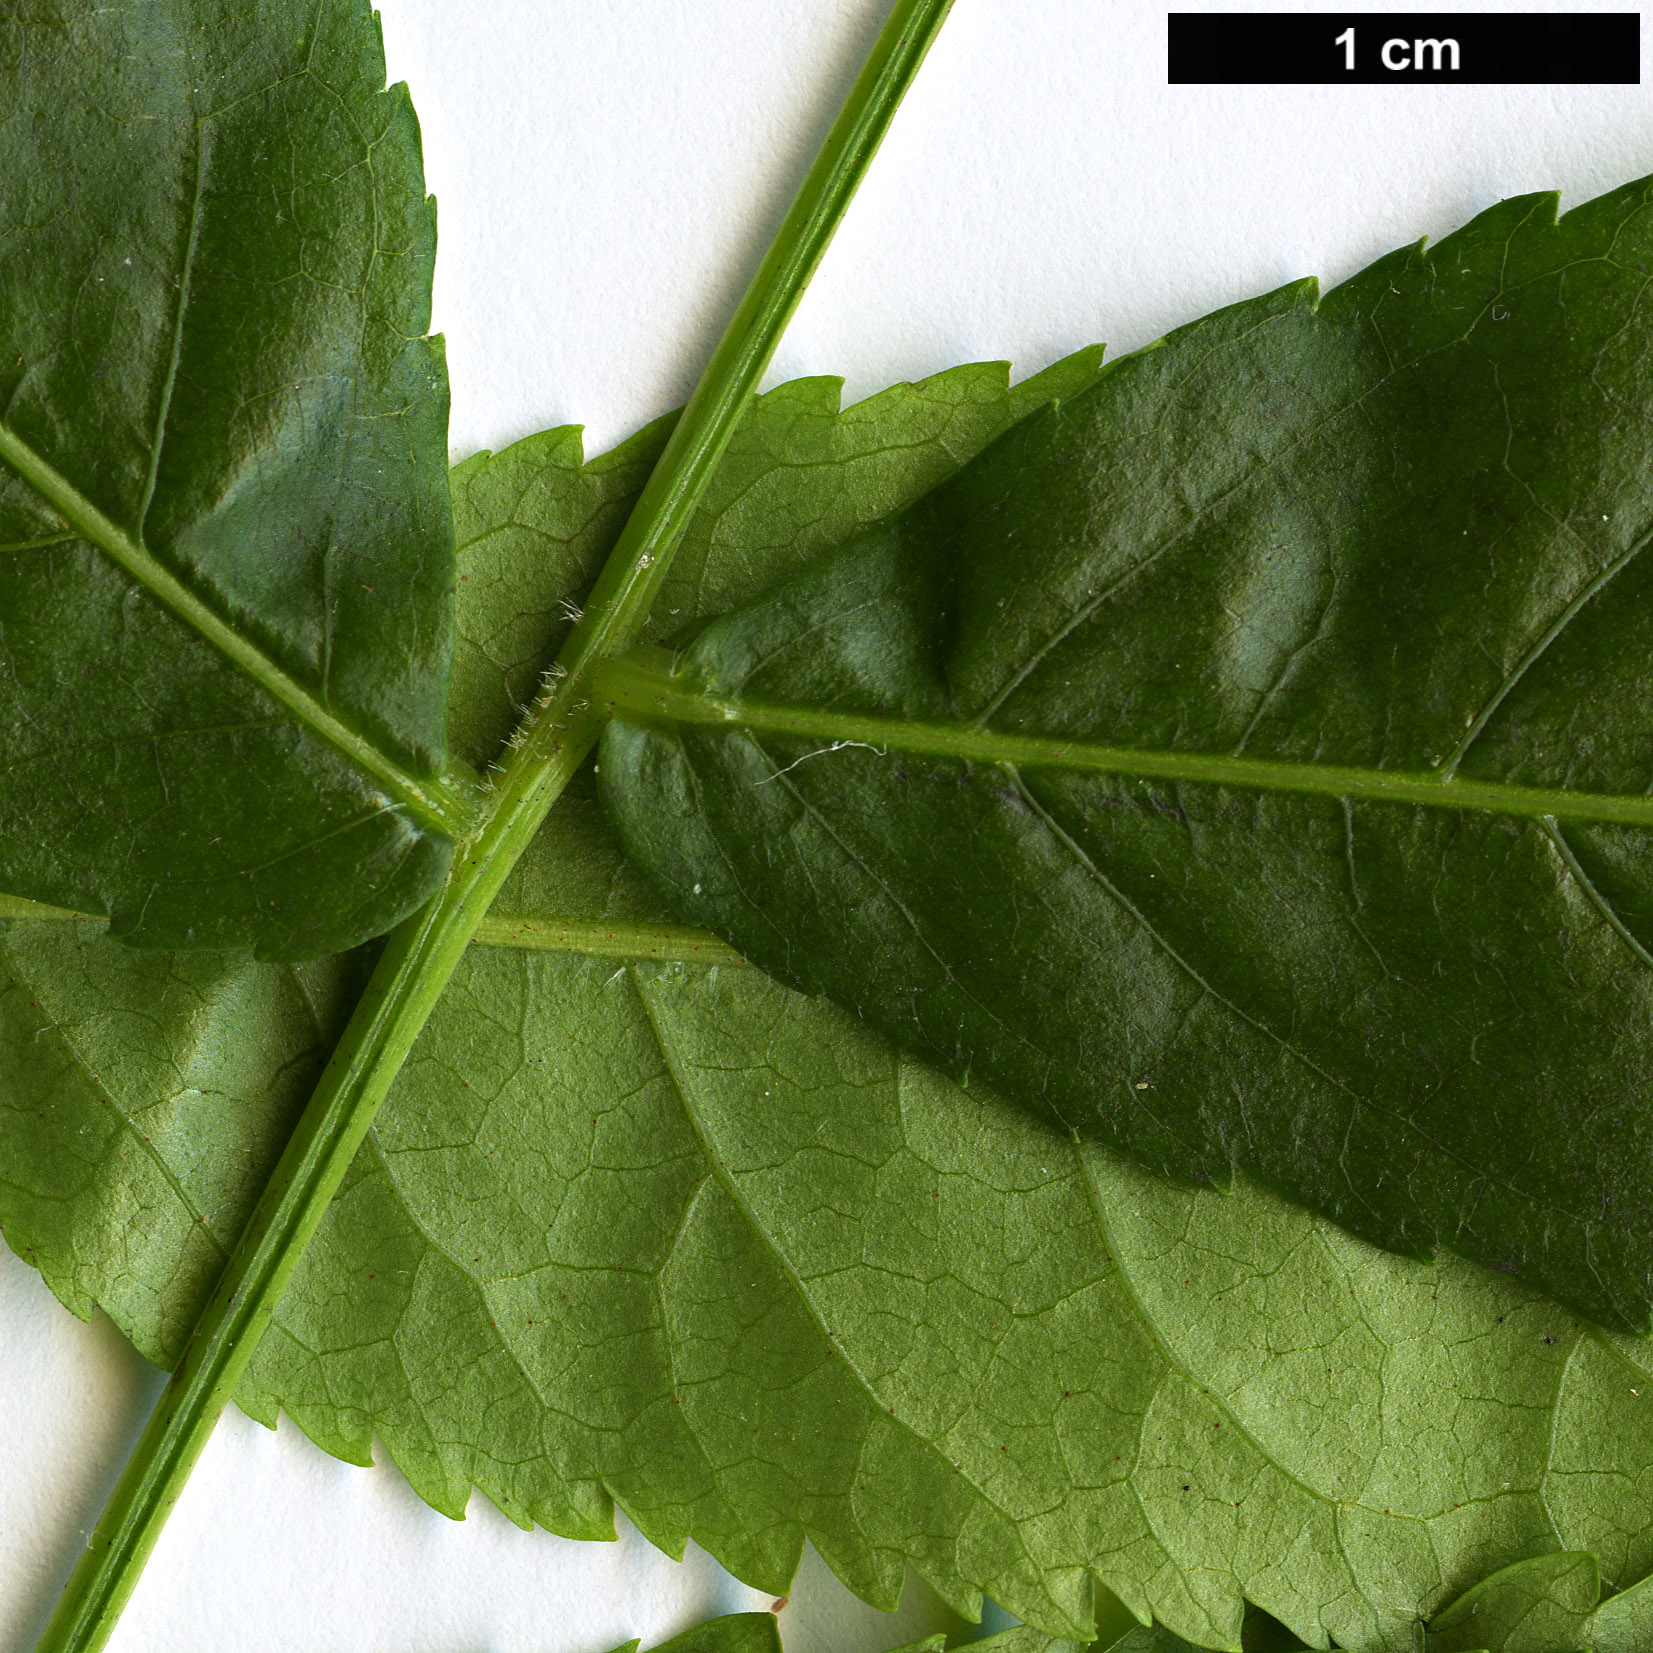 High resolution image: Family: Juglandaceae - Genus: Engelhardia - Taxon: spicata